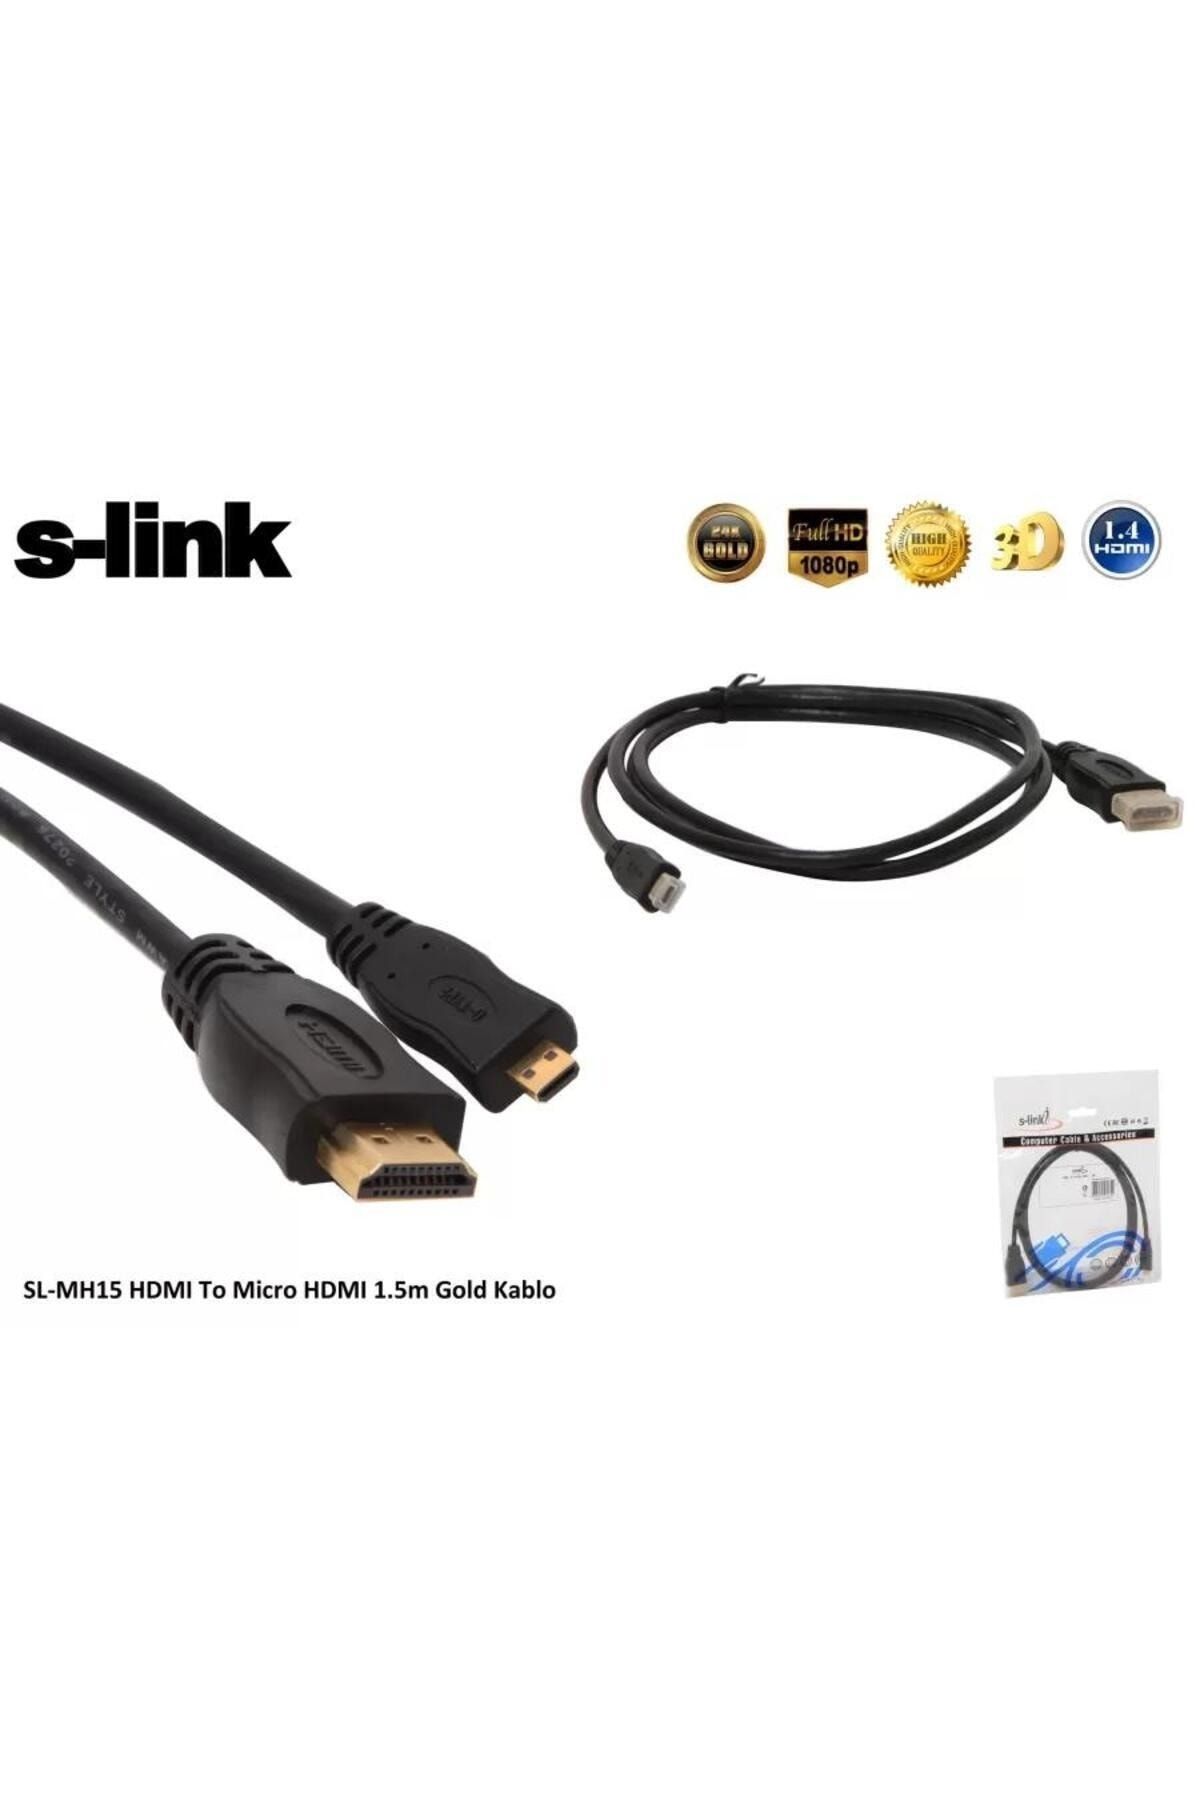 S-Link S Lınk Sl Mh15 1.5Mt Hdmı M To Micro Hdmı M Gold / S Link